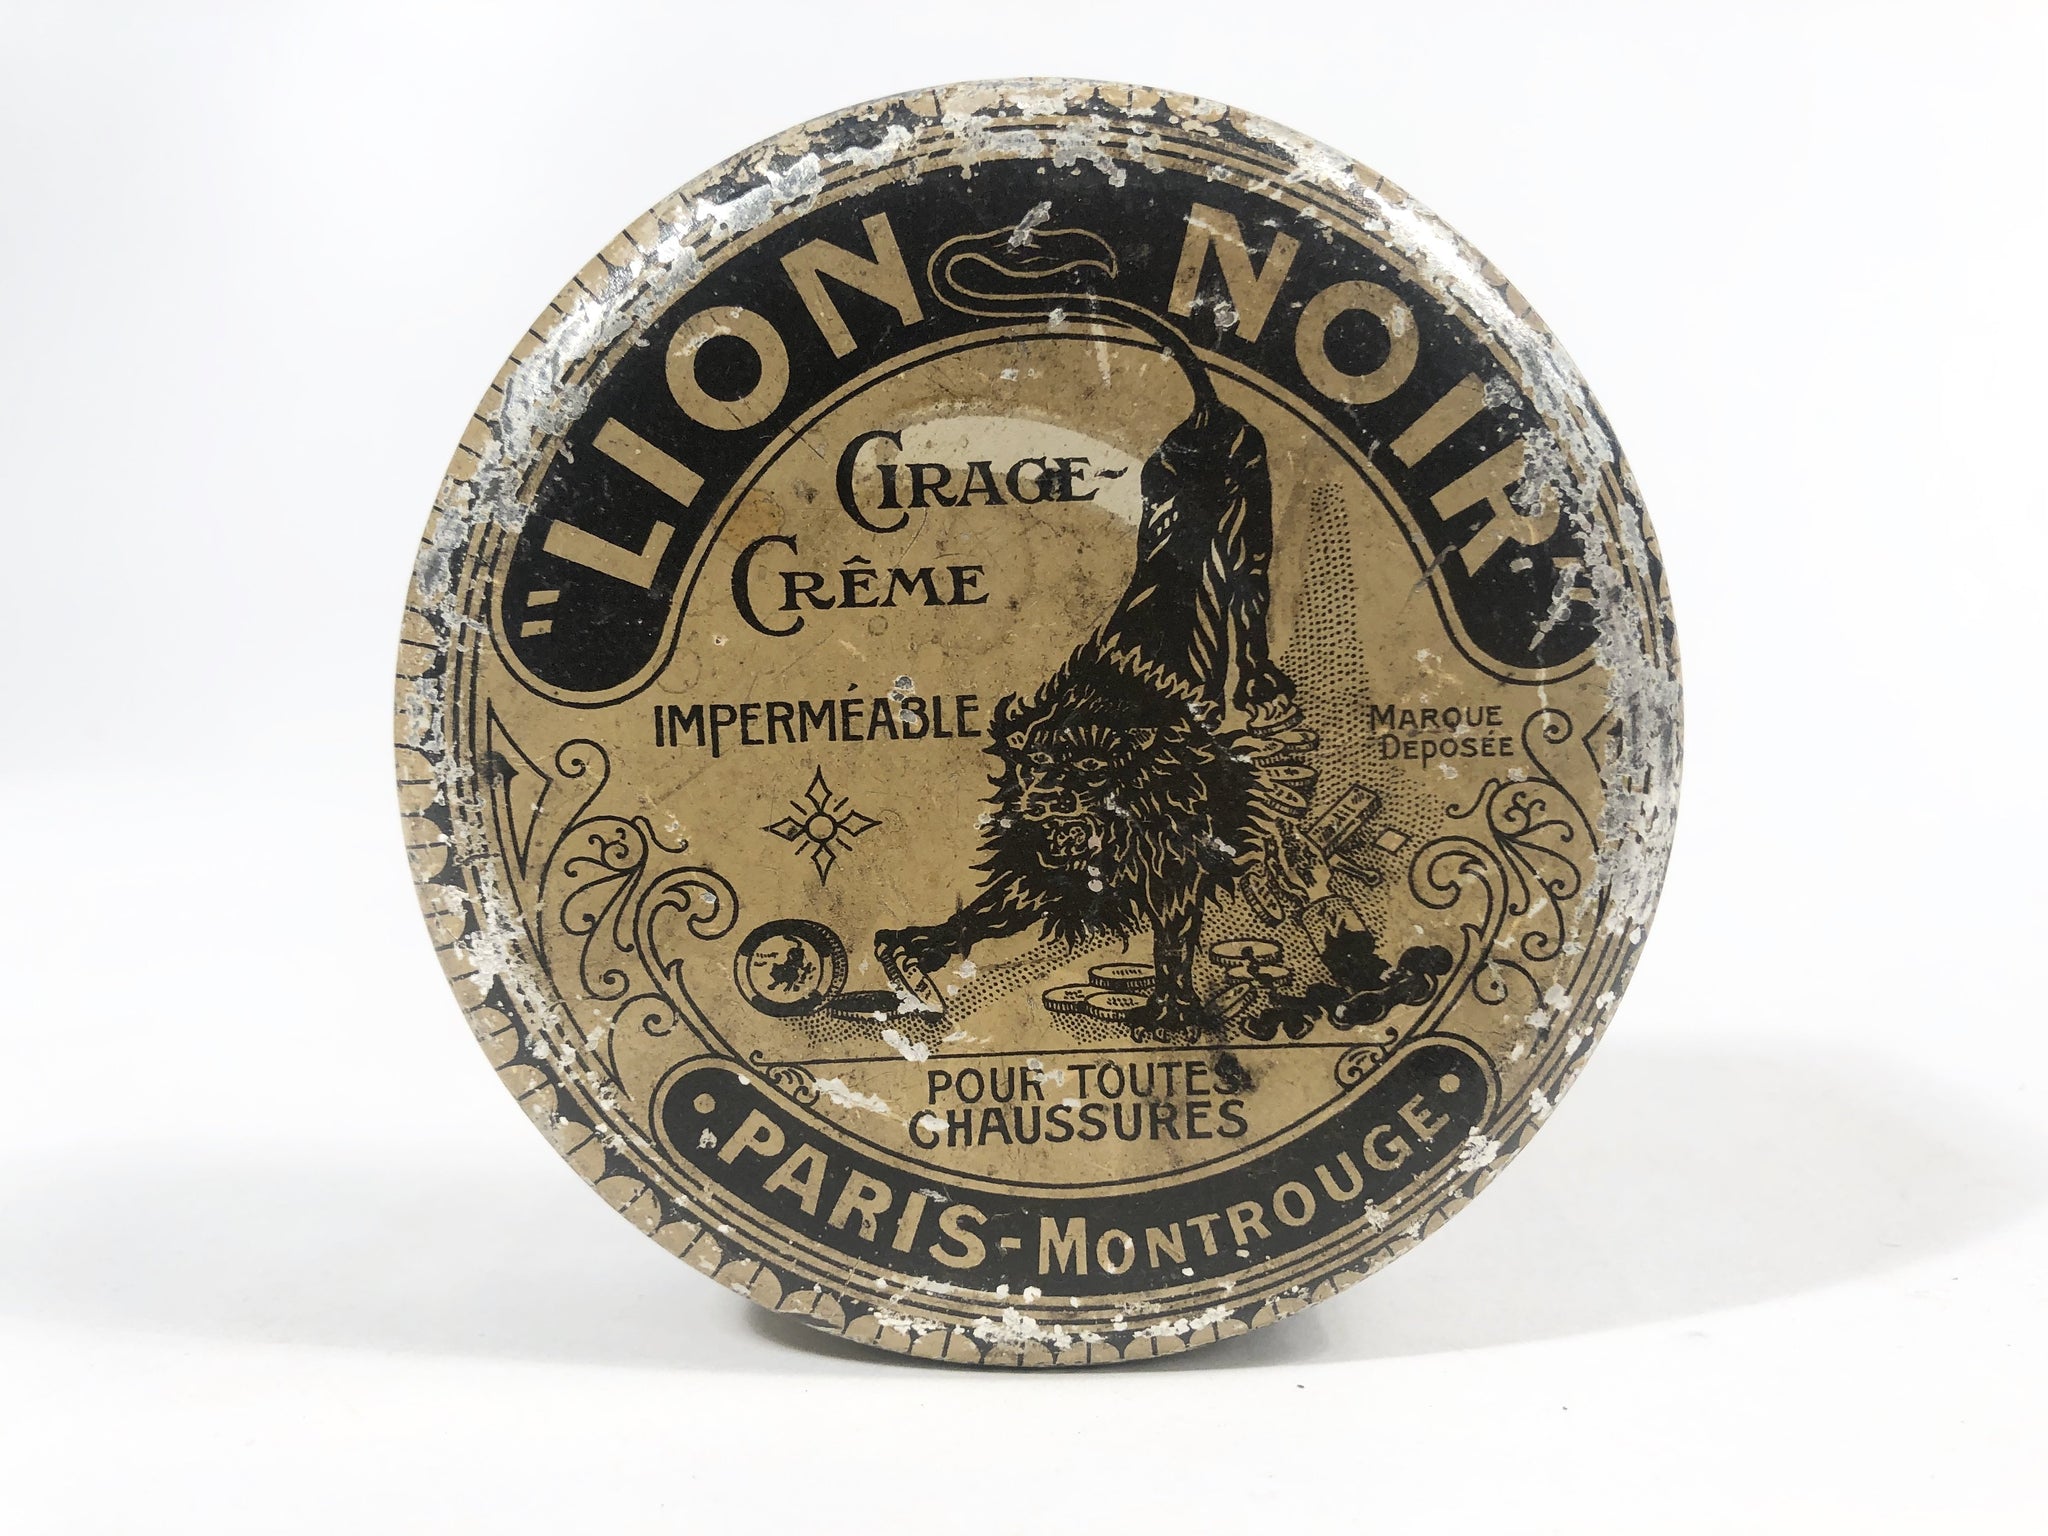 LION NOIR Cirage Creme, 1920's, French Waterproof Shoe Polish Tin